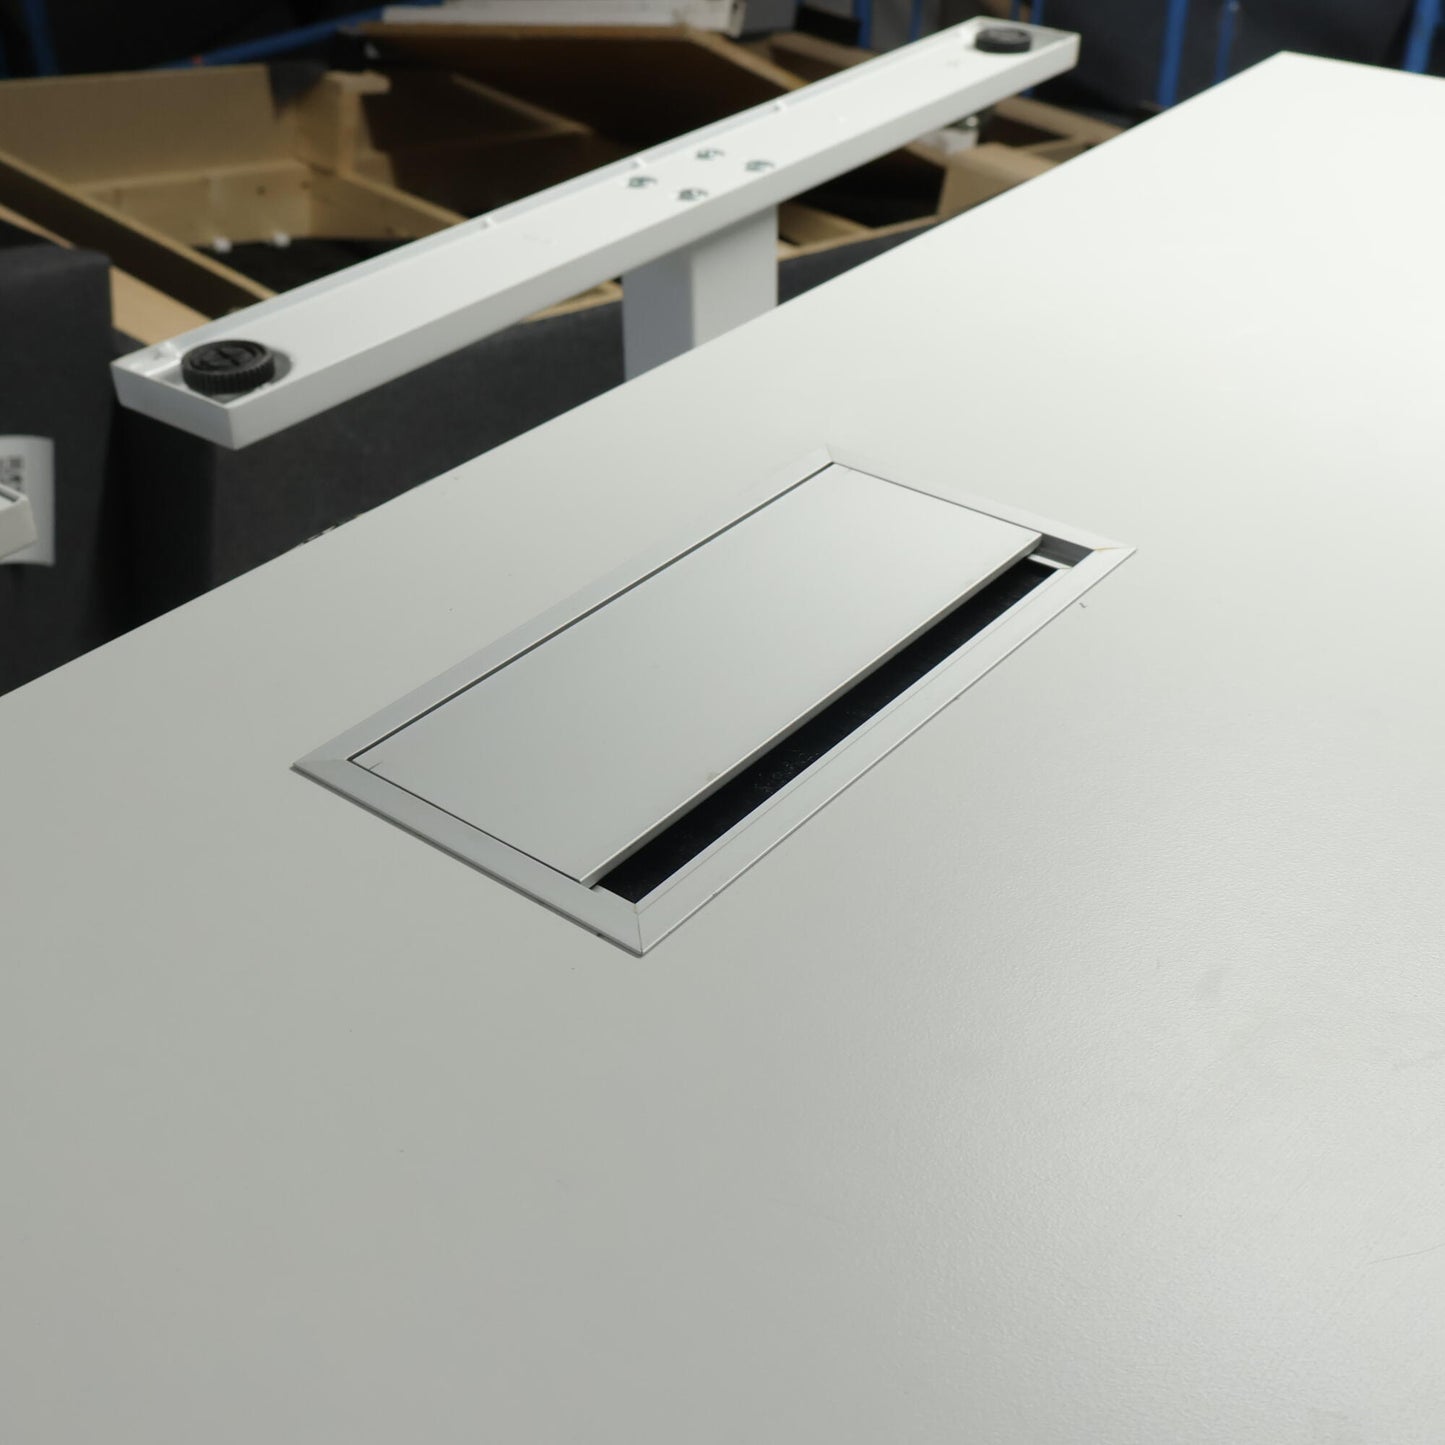 Kvalitetssikret | Helhvit 140x80 cm, Linak elektrisk hev/senk skrivebord, 2018 modell